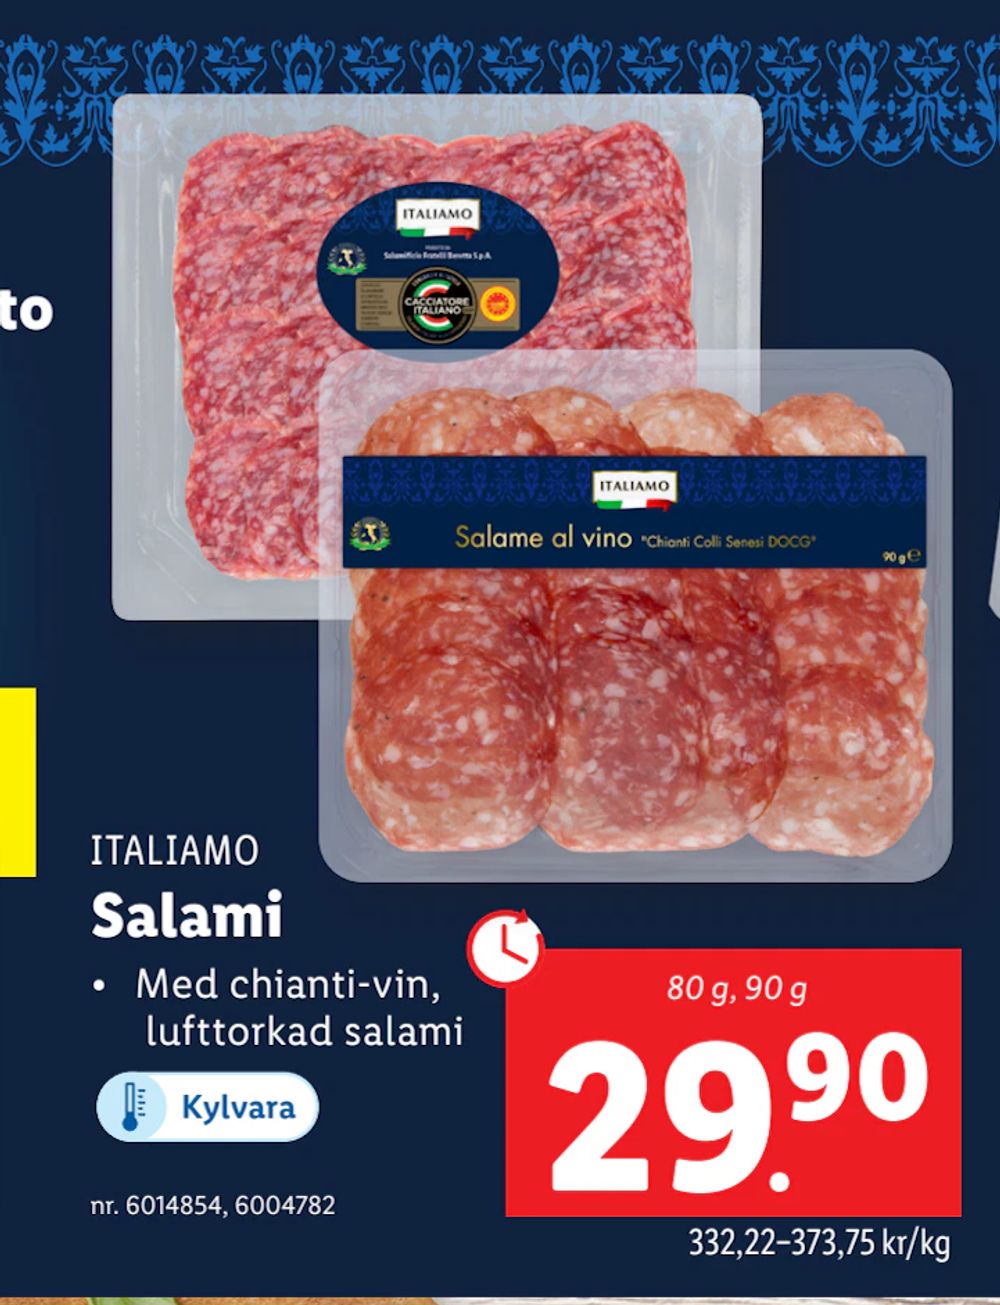 Erbjudanden på Salami från Lidl för 29,90 kr